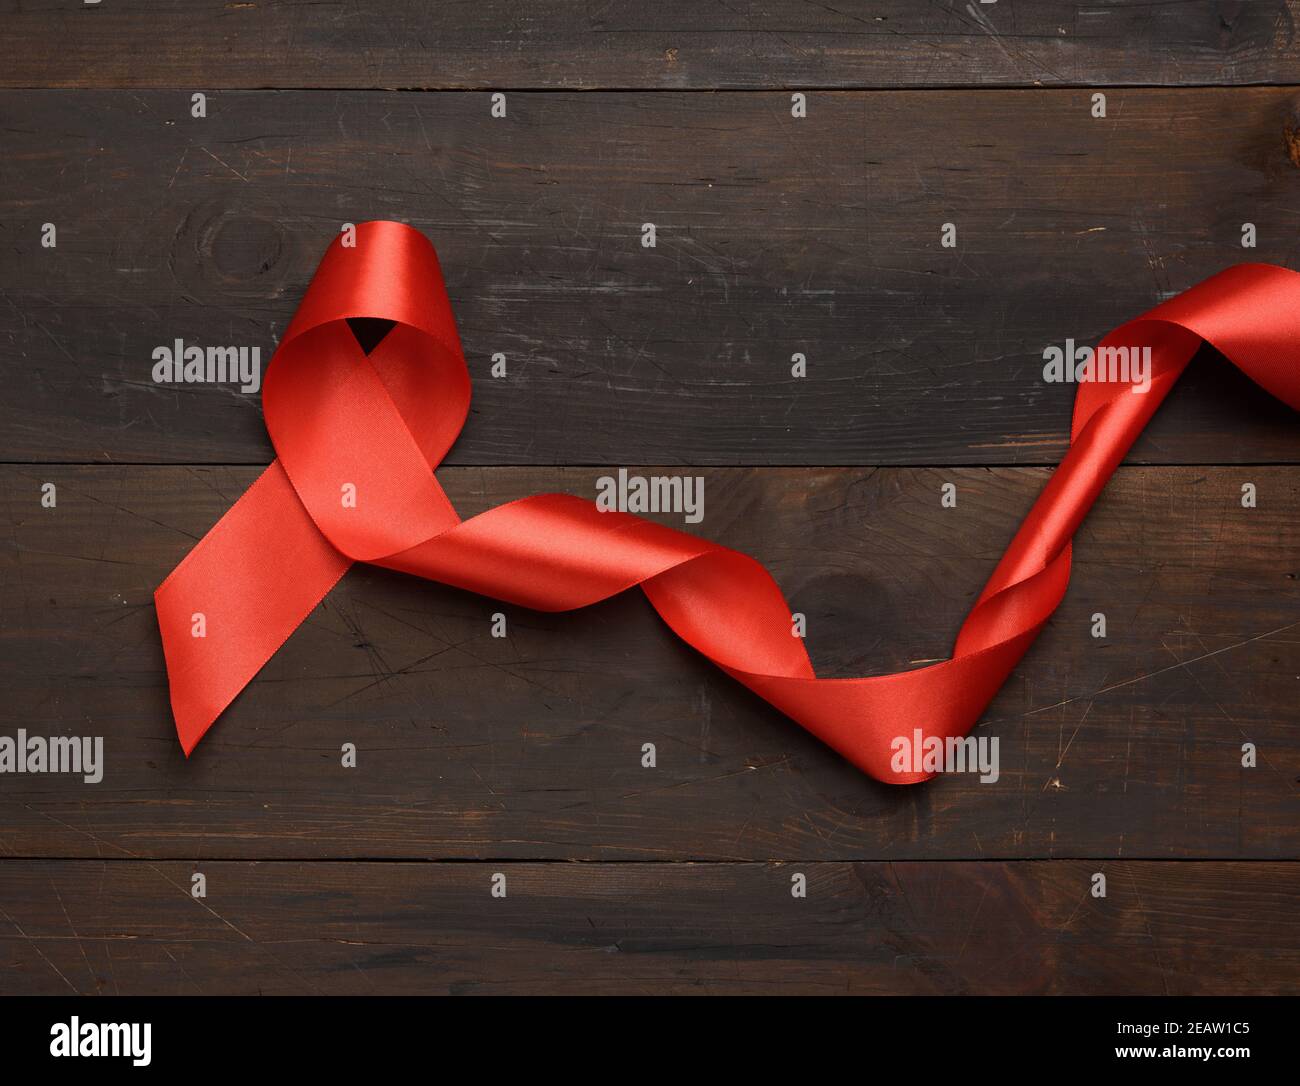 Rotes Seidenband in einer Schlaufe auf einem braunen gefaltet  Holzhintergrund Stockfotografie - Alamy